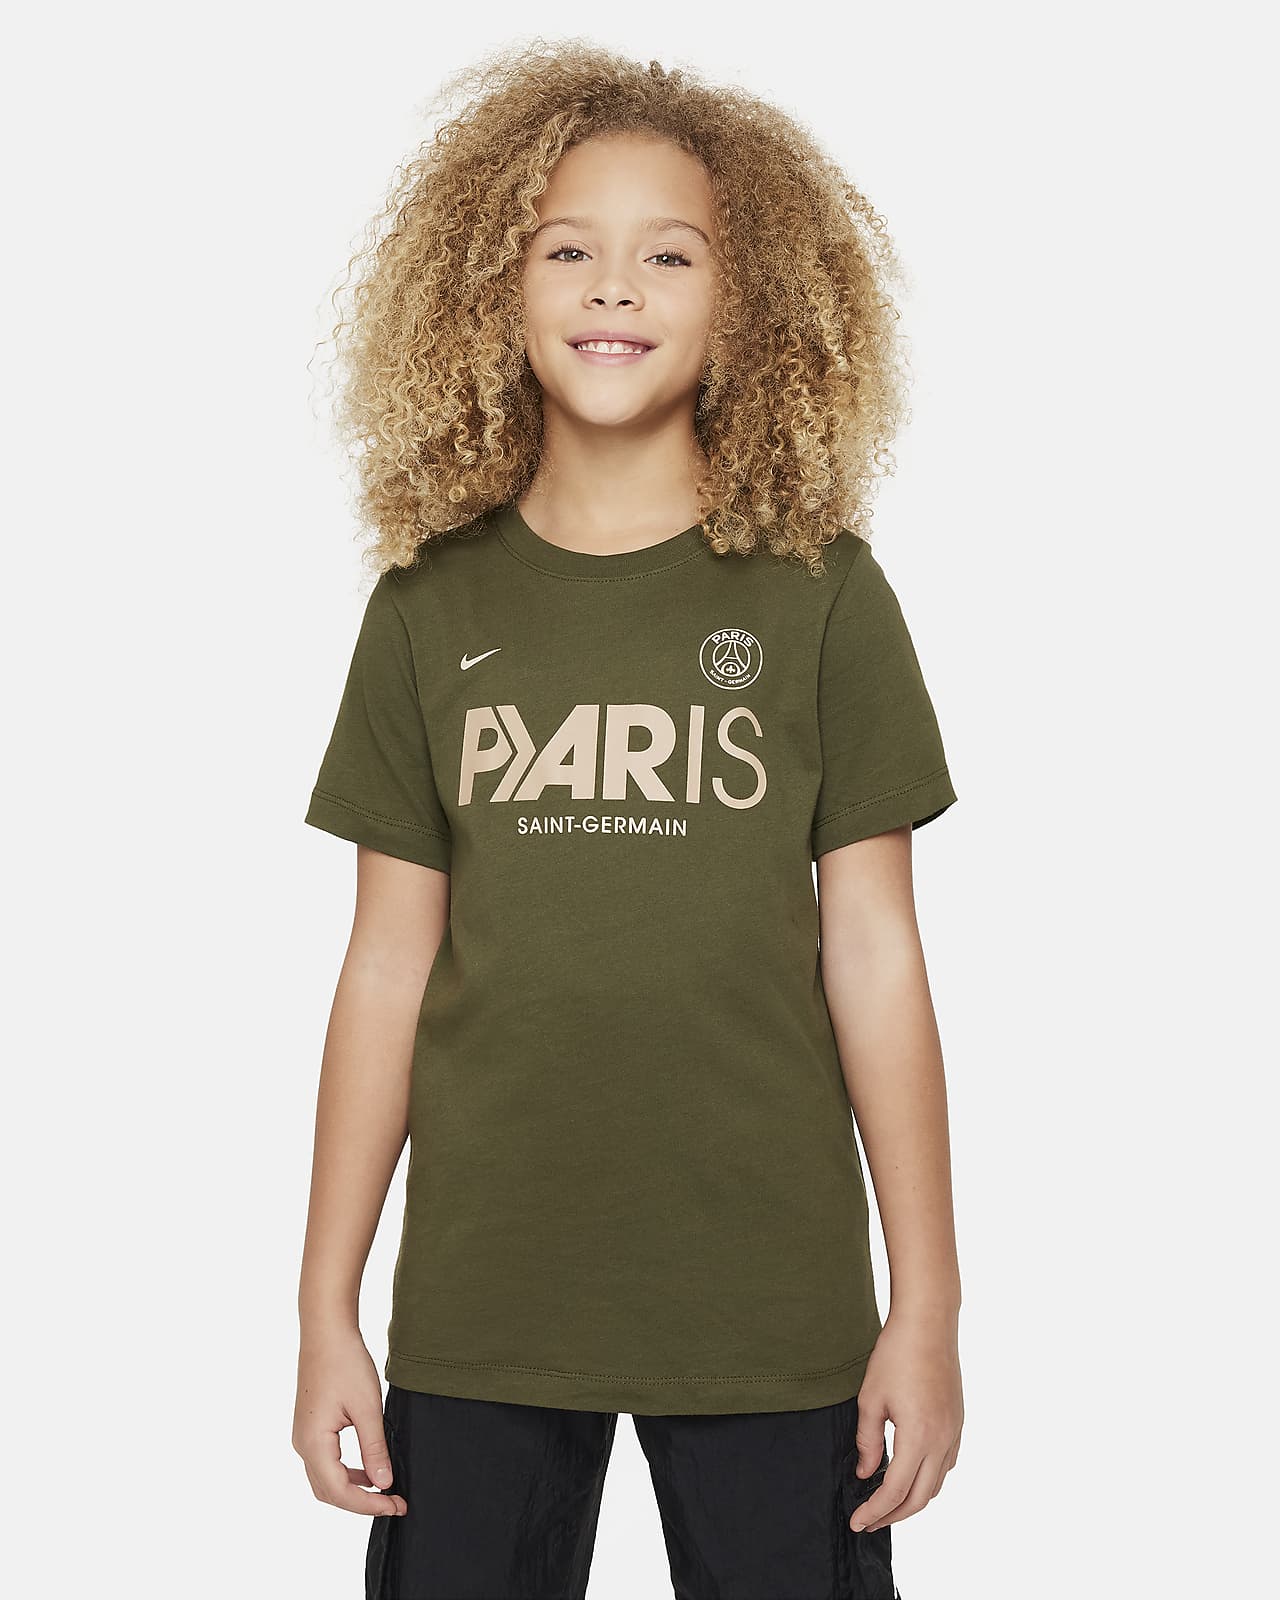 Paris Saint-Germain Mercurial Nike voetbalshirt voor kids